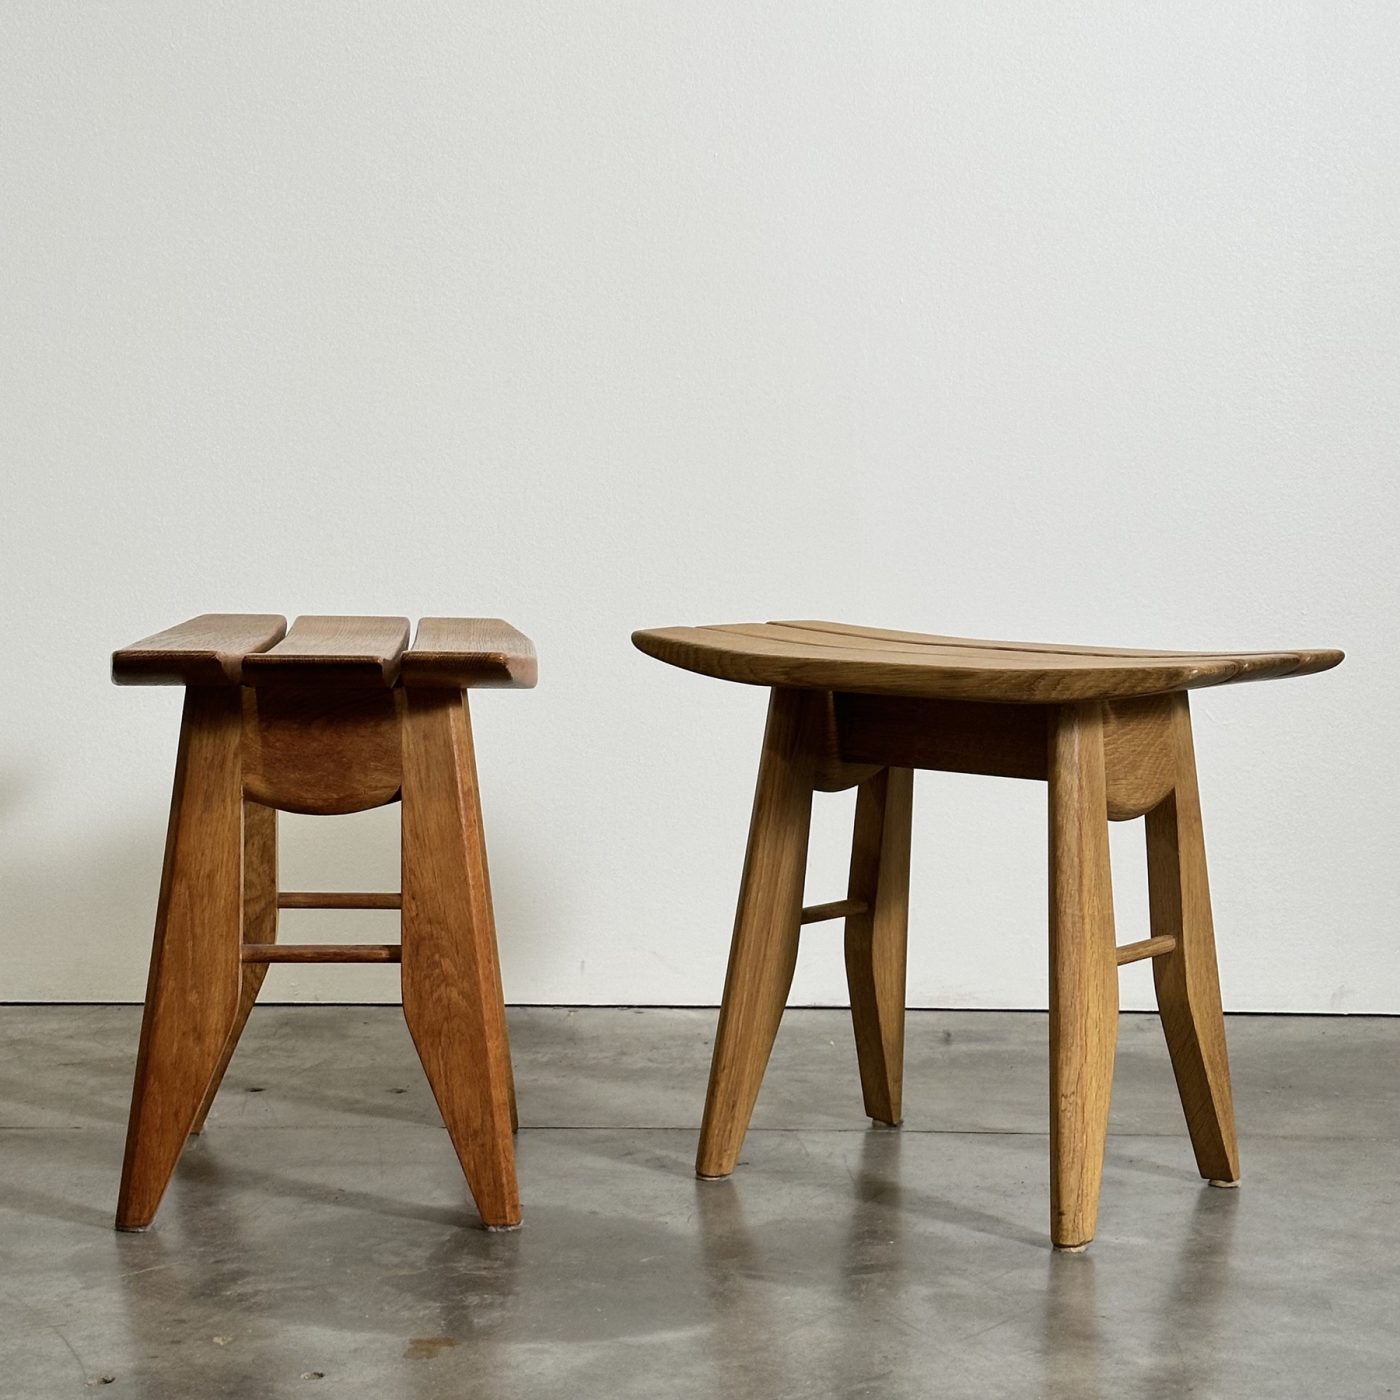 objet-vagabond-guillerme-stools0003